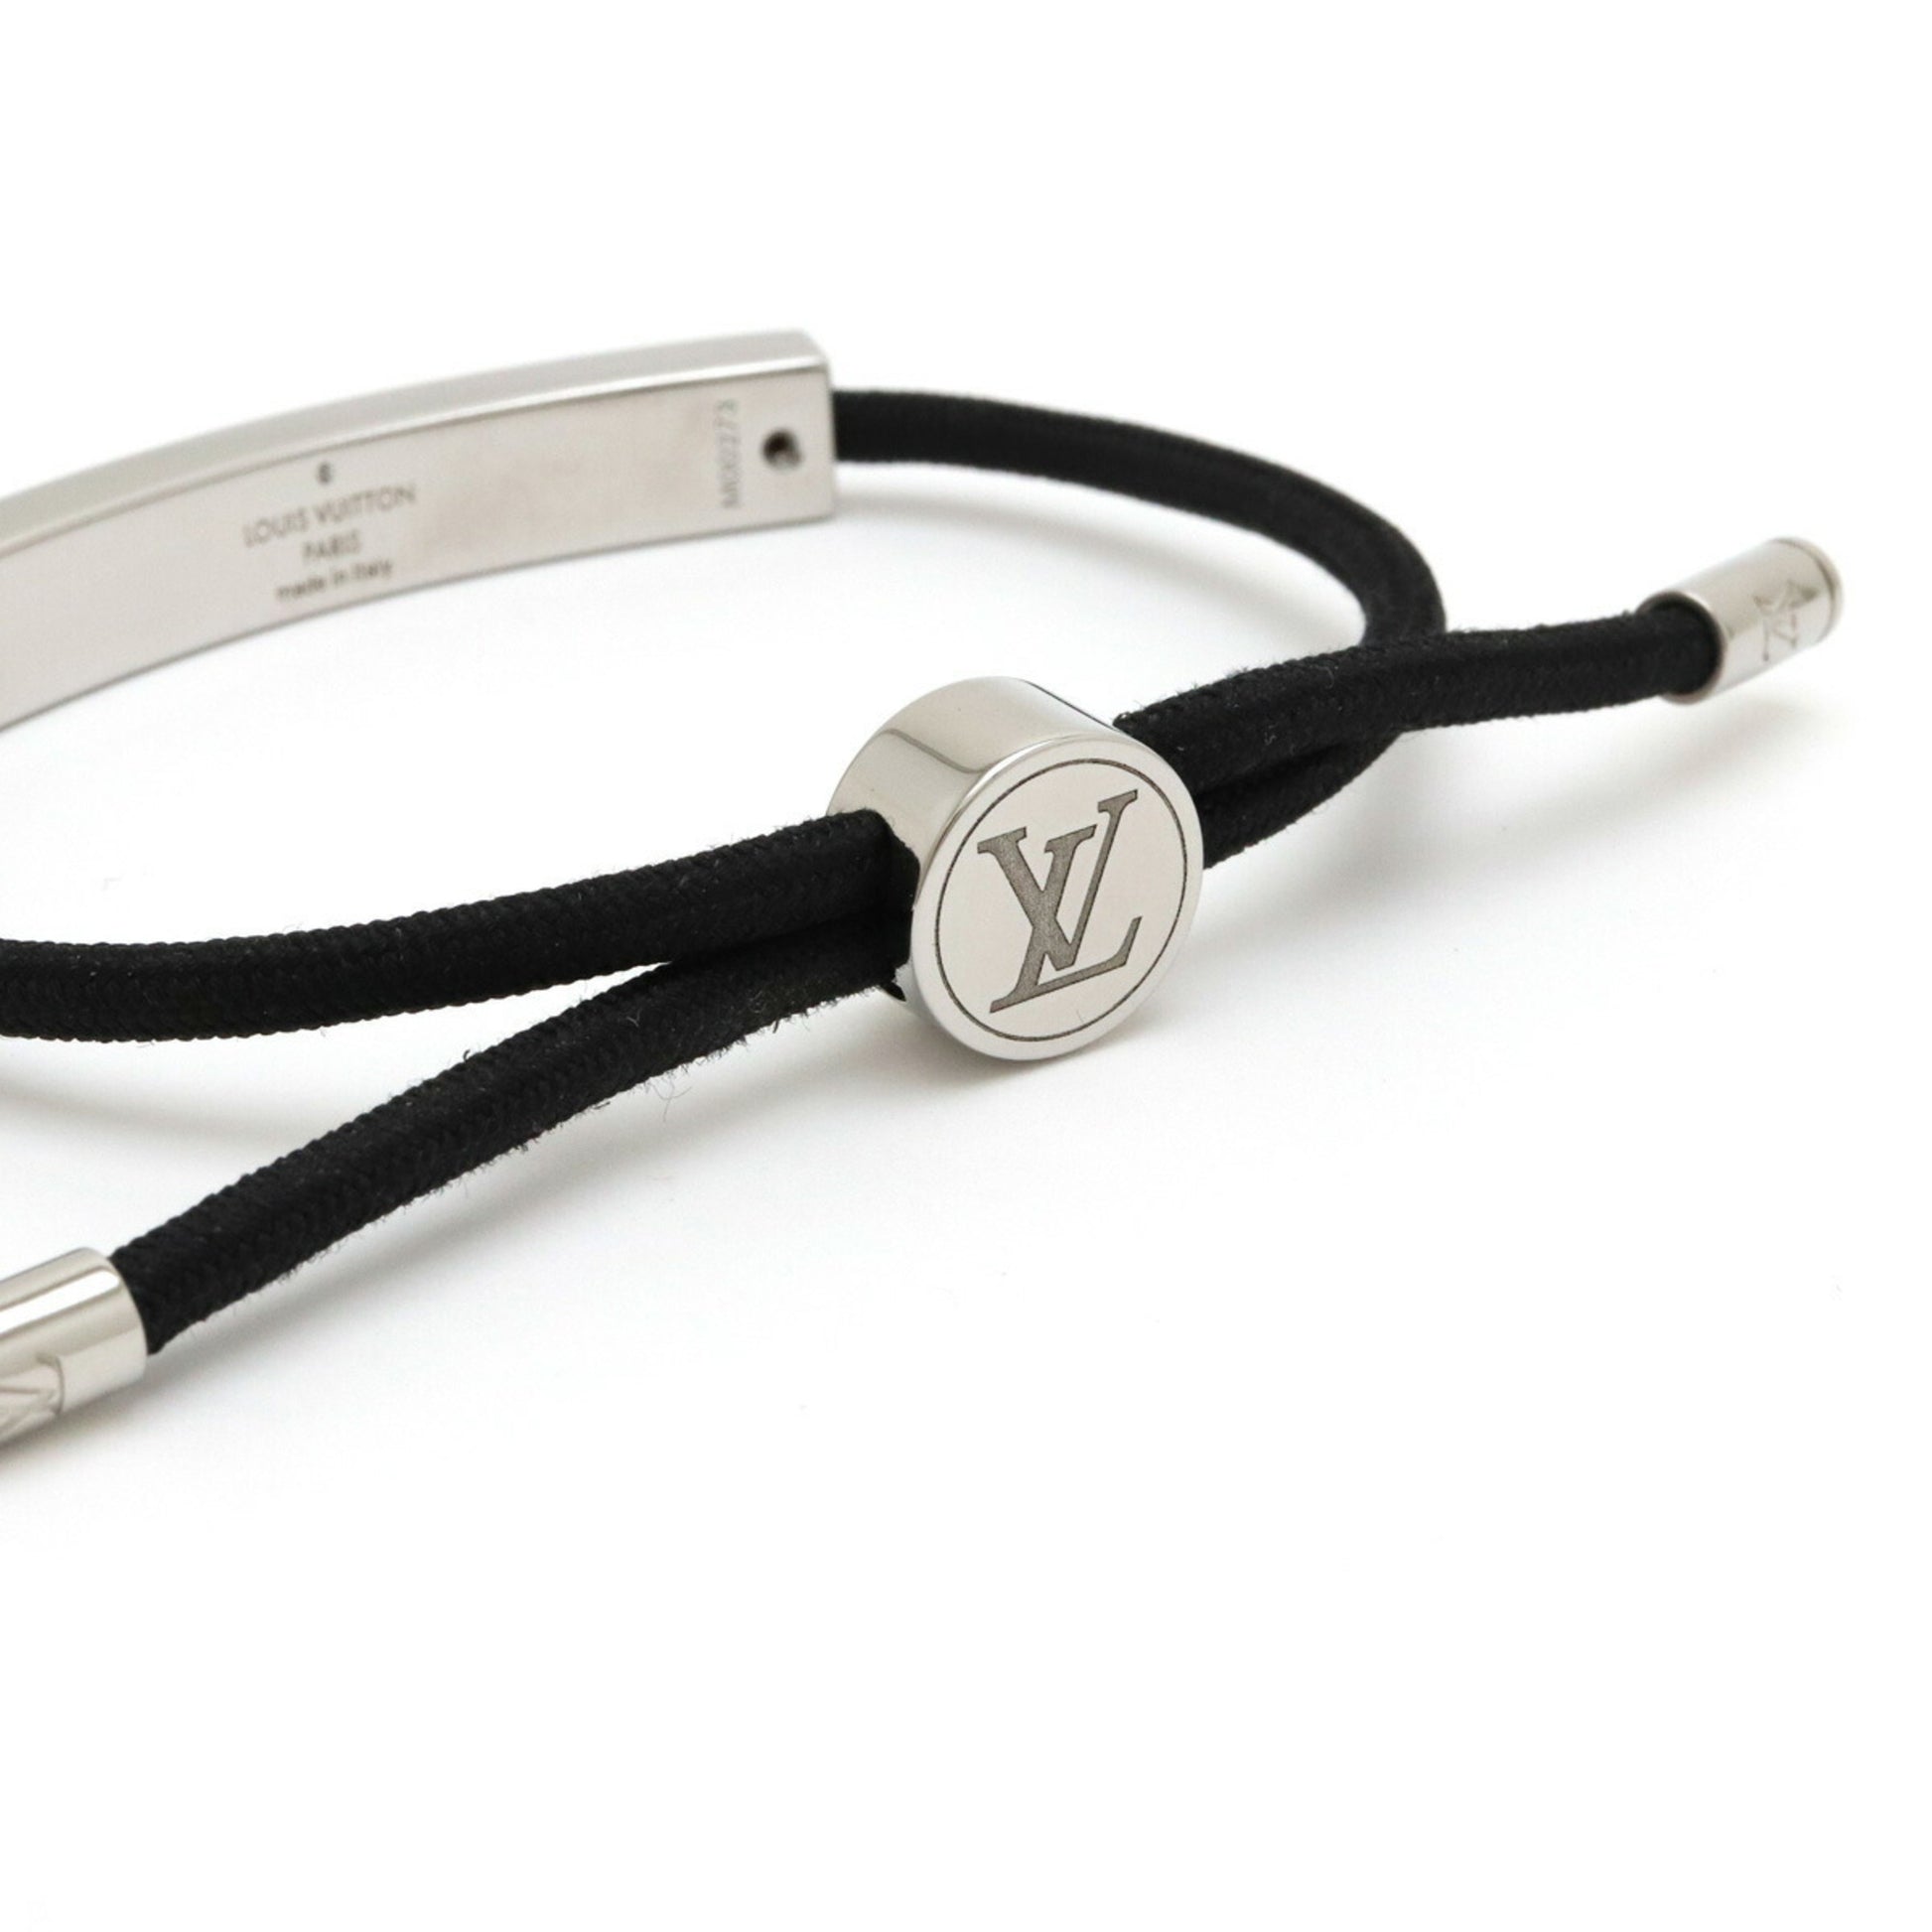 LOUIS VUITTON Louis Vuitton Bracelet LV Space M00273 Men's